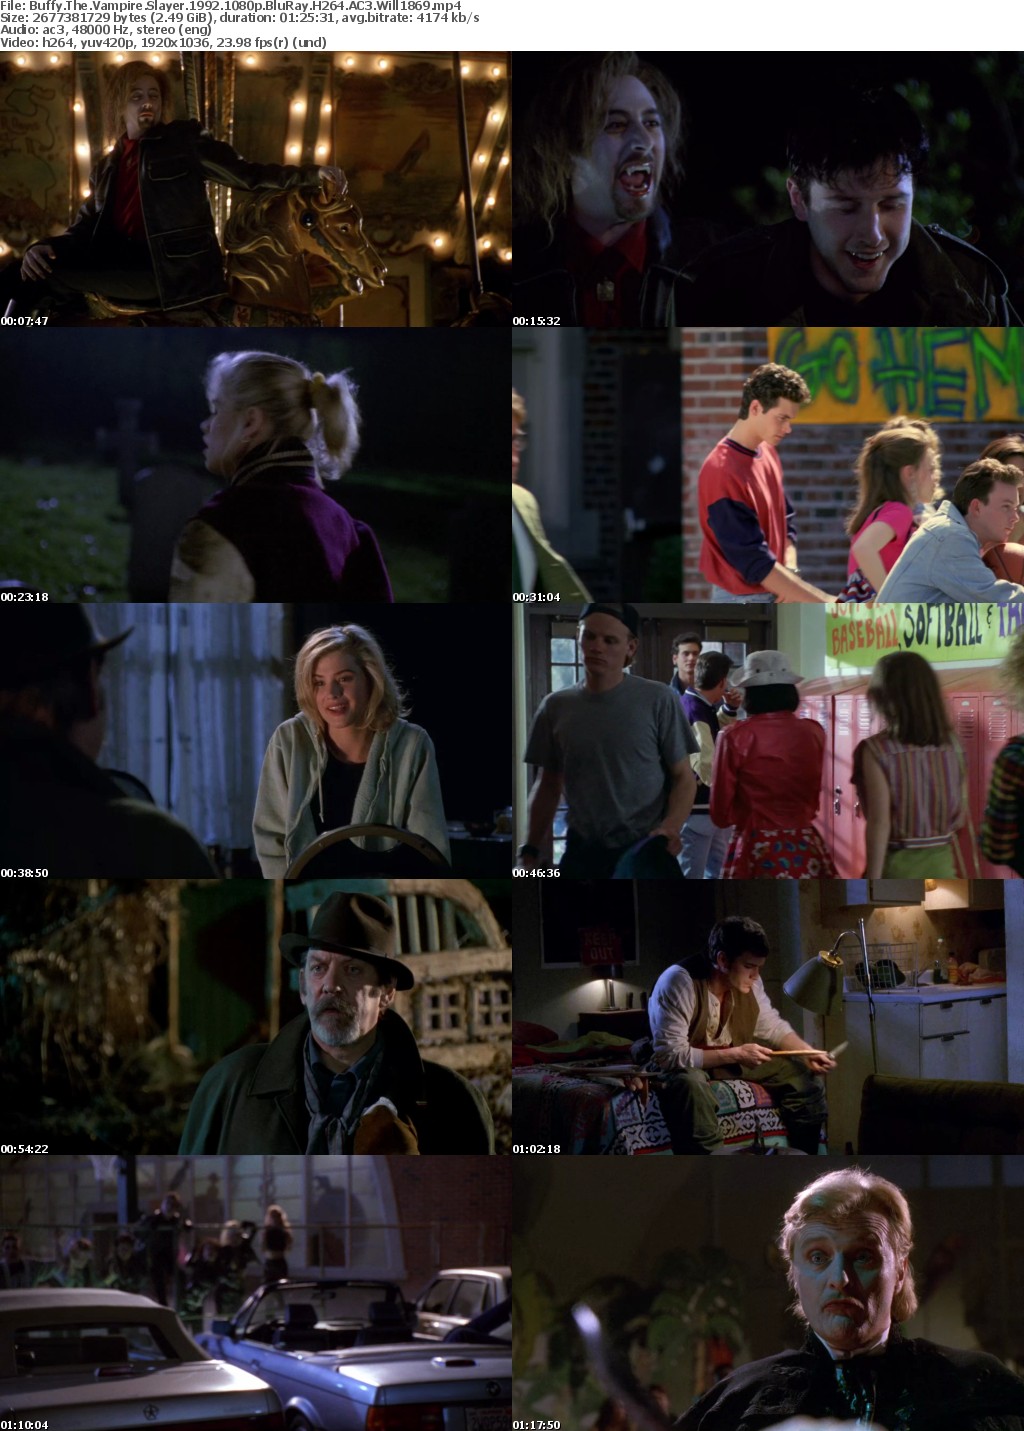 Buffy The Vampire Slayer 1992 1080p BluRay H264 AC3 Will1869